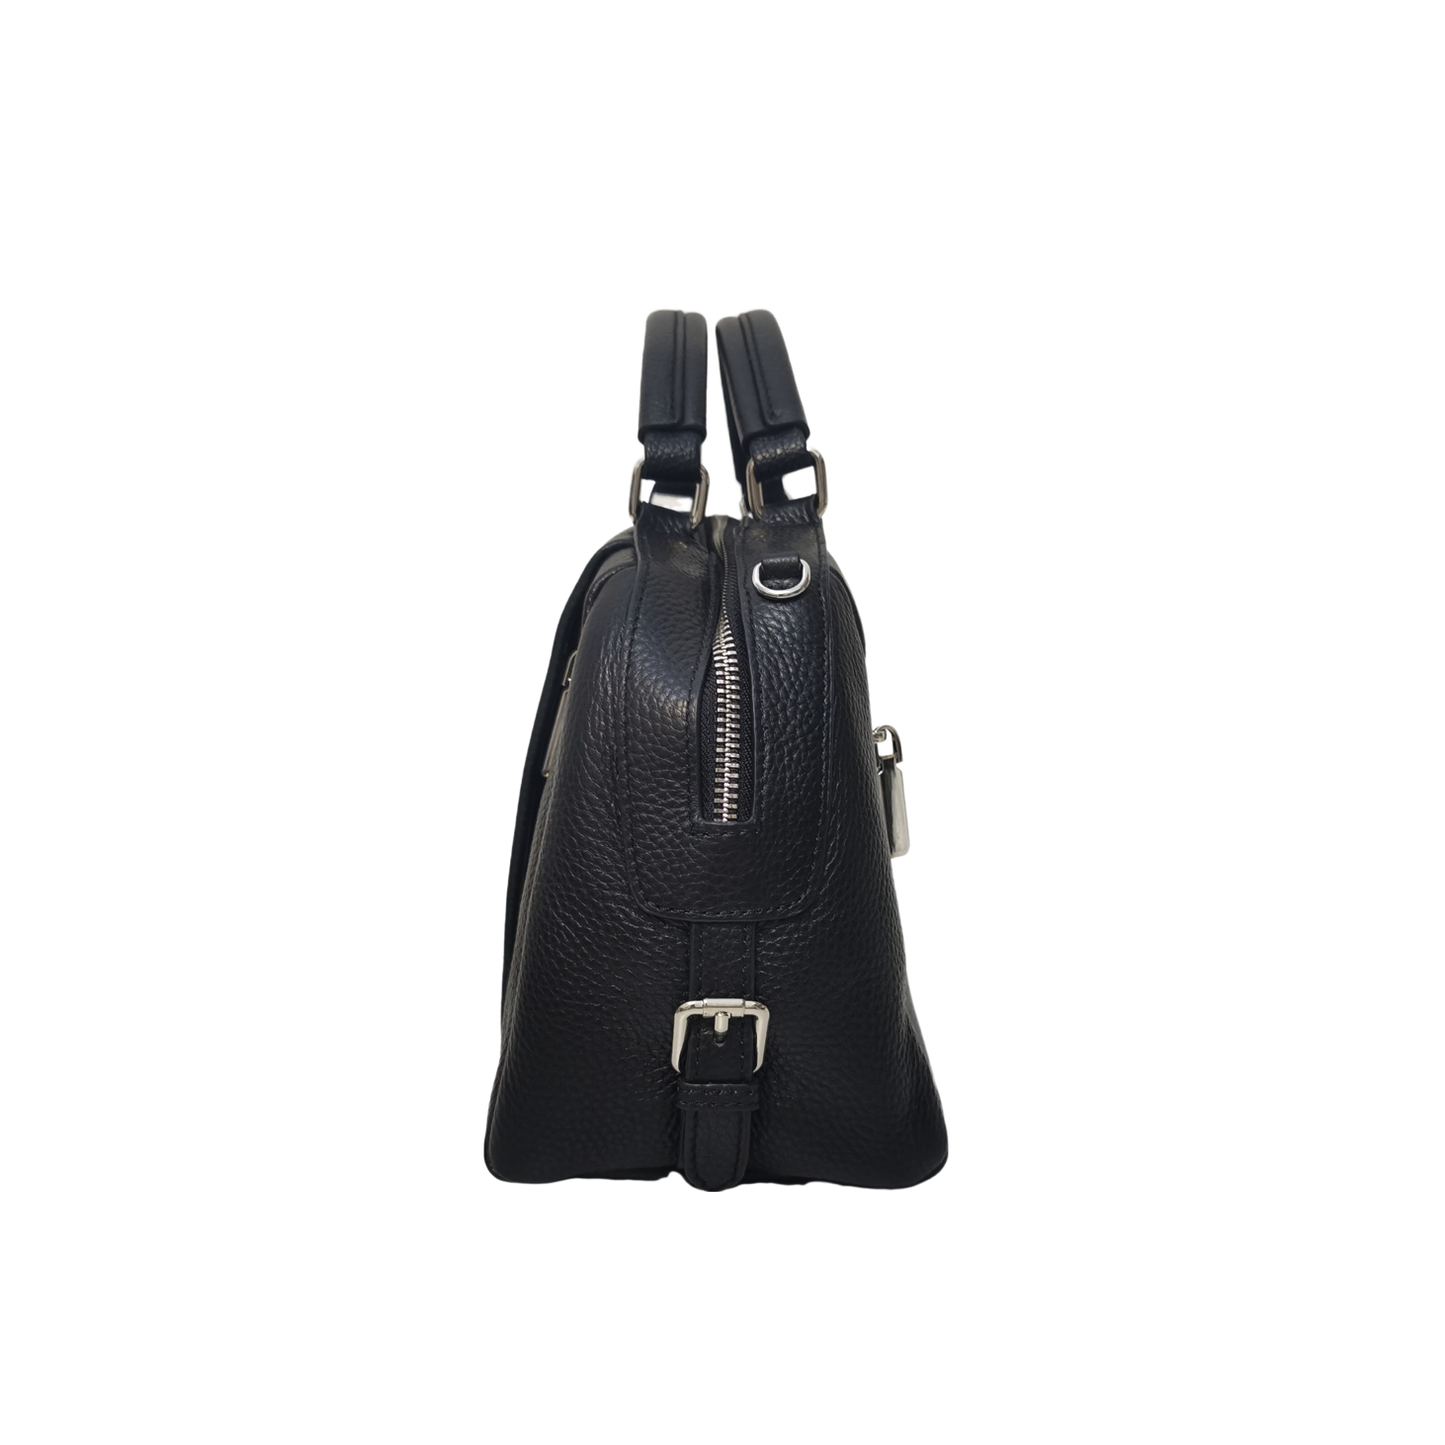 Women's genuine cowhide leather handbag Alana V2 design